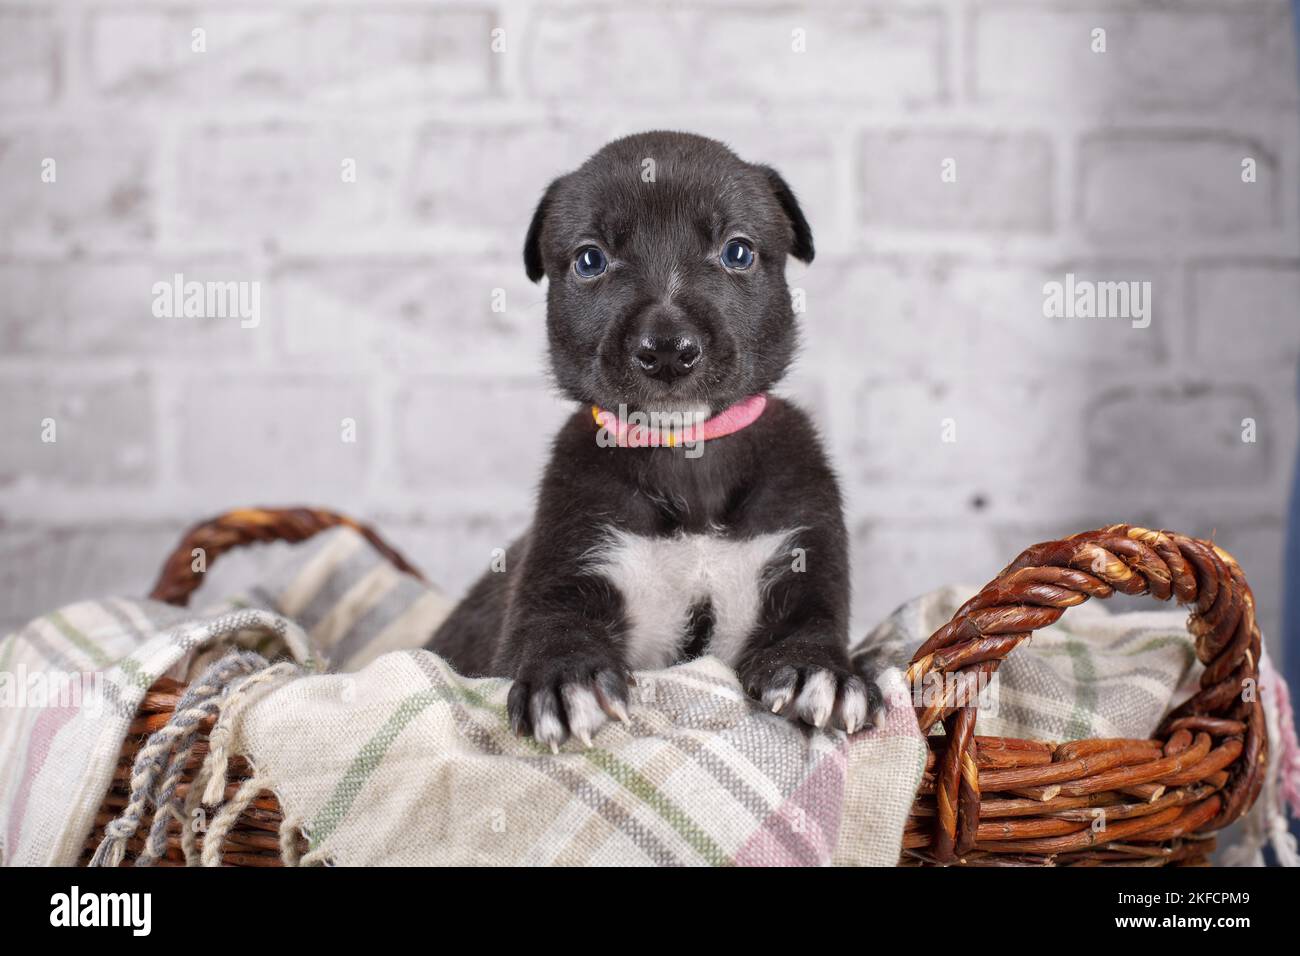 Greyhound puppy in basket Stock Photo